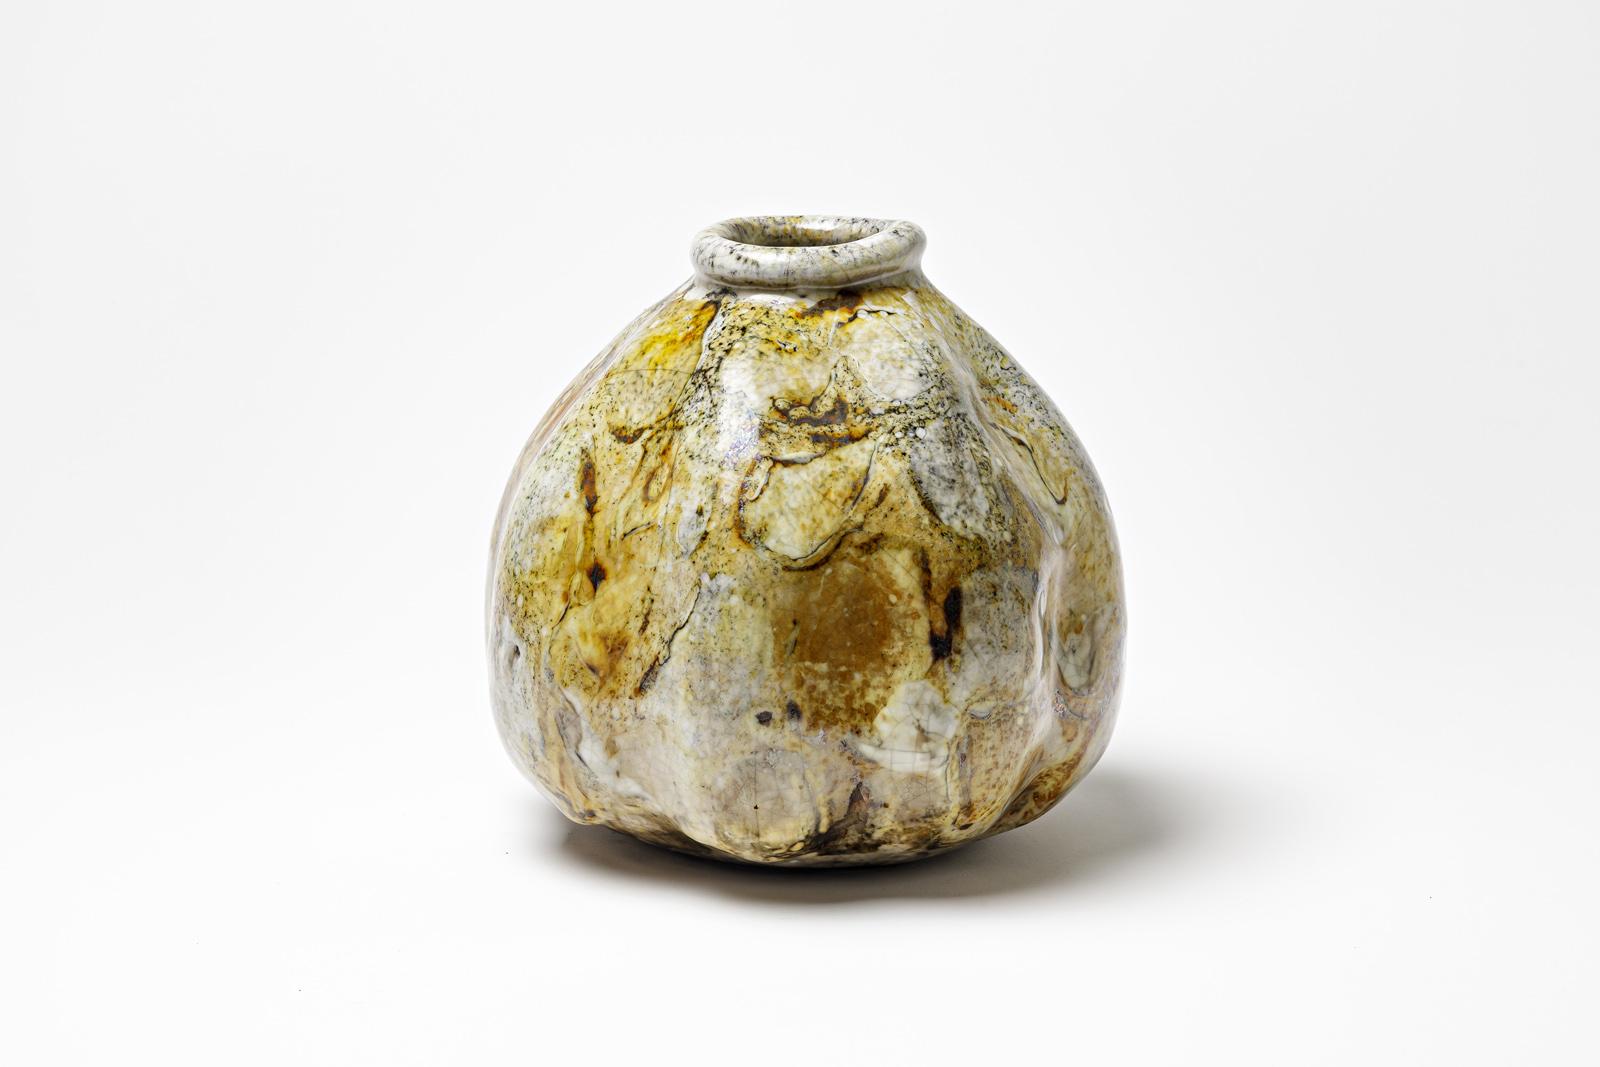 Vase en céramique émaillée jaune/brun et blanc de Gisèle Buthod Garçon. 
Raku a tiré. Monogramme de l'artiste sous la base. Vers 1980-1990.
H : 8.3' x 7.1' pouces.